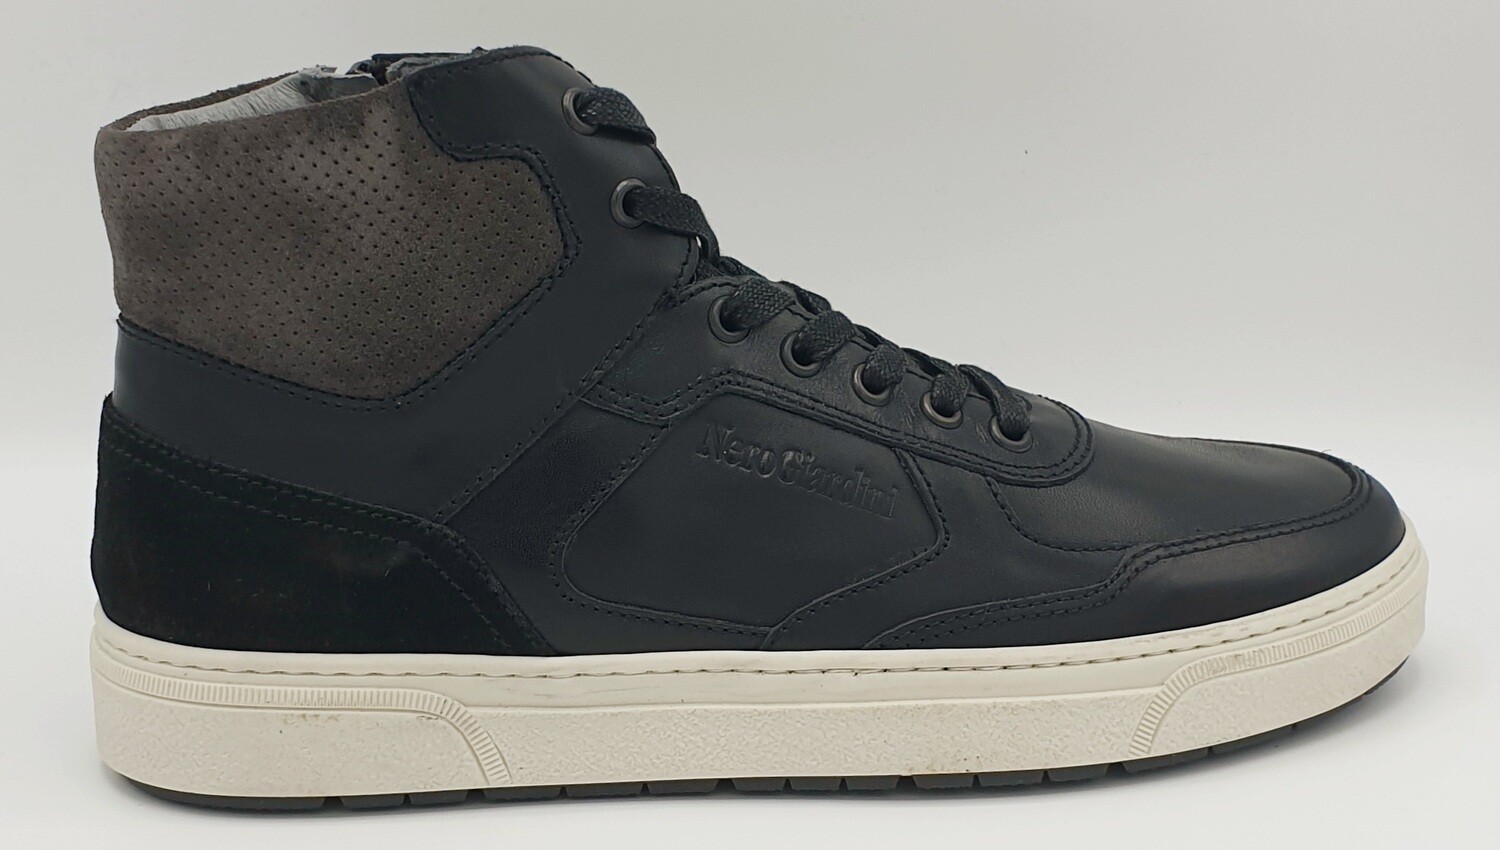 Sneakers alta Nero Giardini art. A901260U/100 colore nero